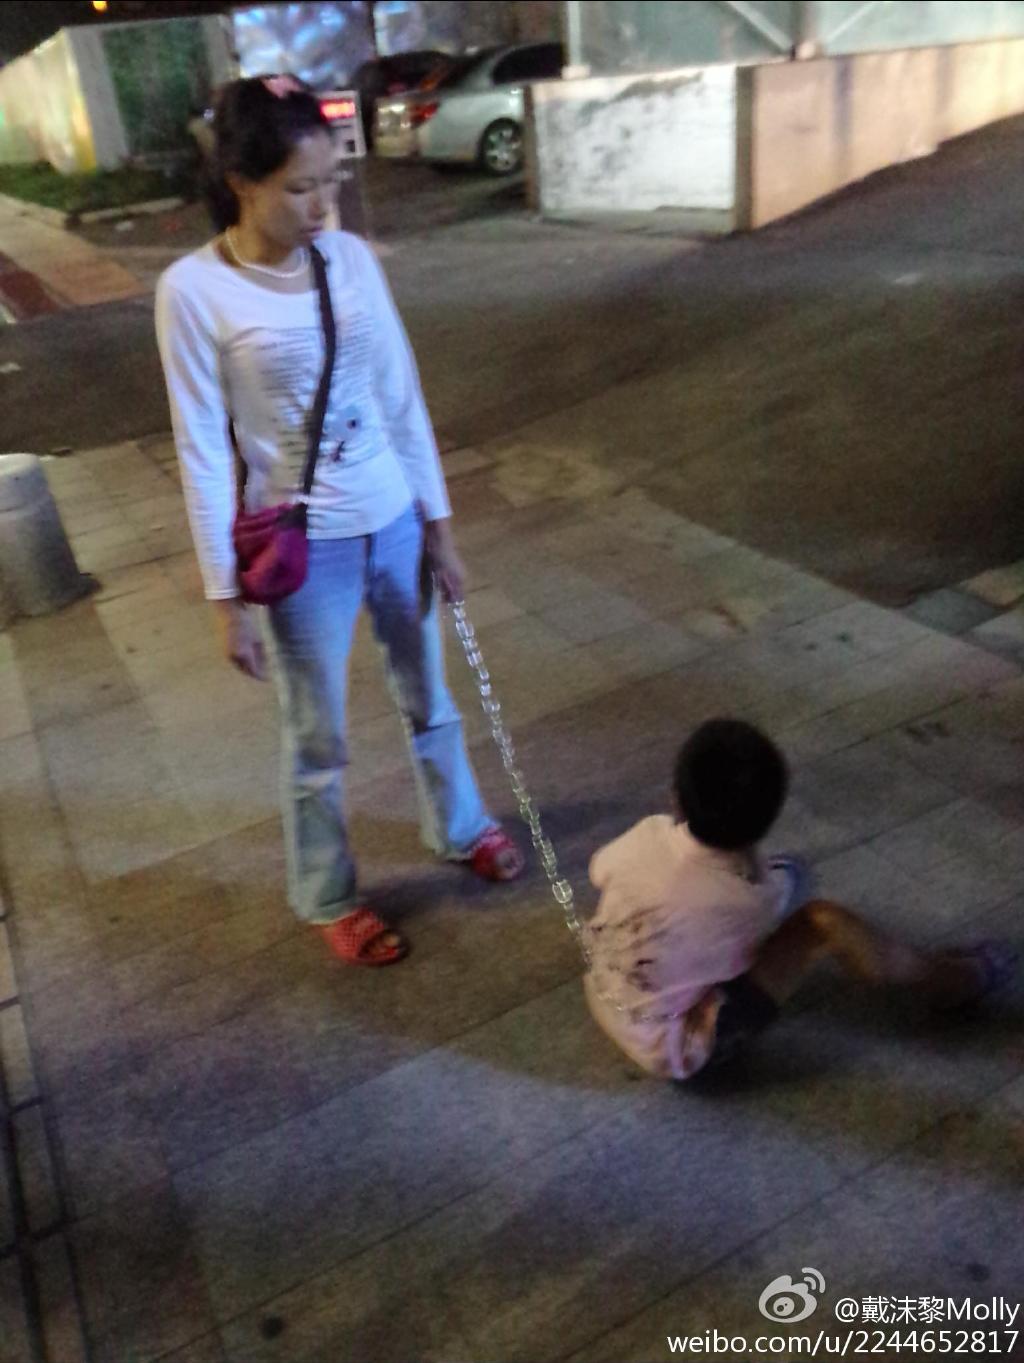 珠海骑车女子用铁链拖行一男孩 警方回应：两人为母子关系